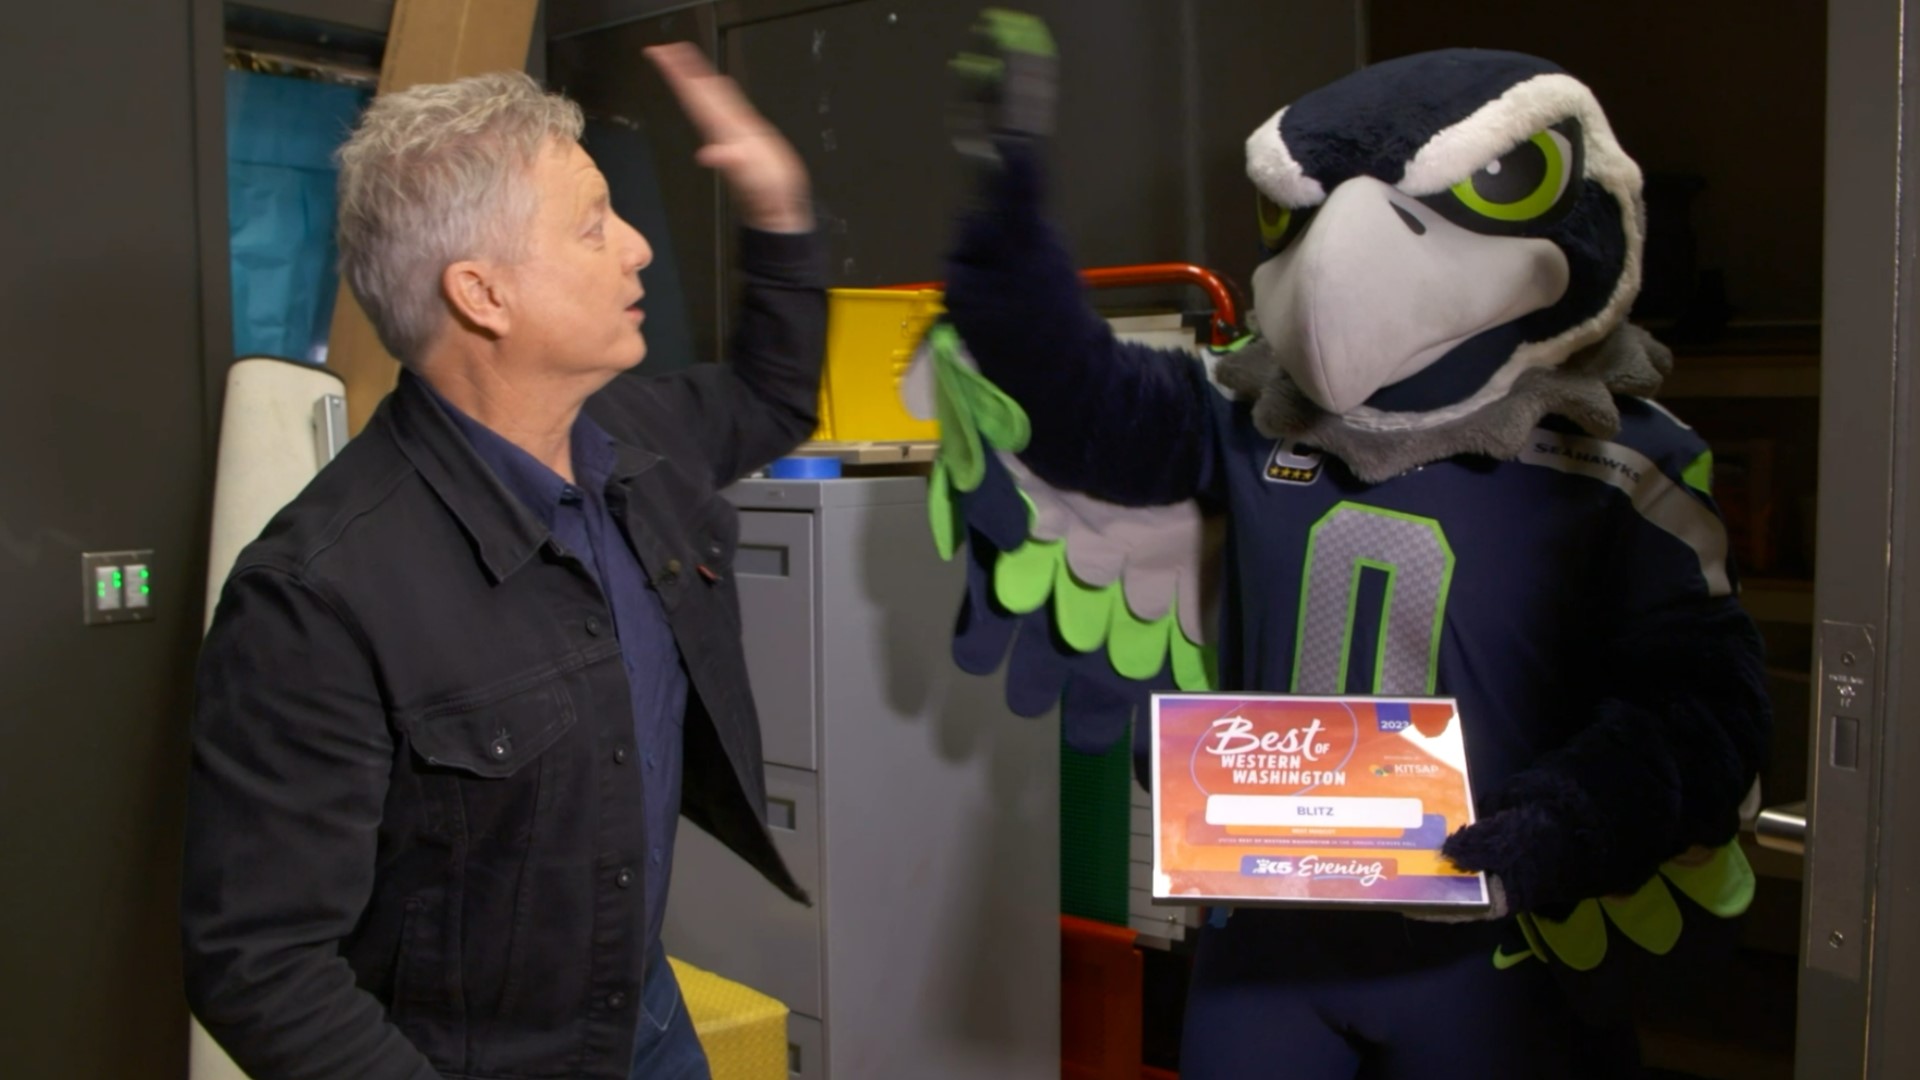 Seattle Seahawks' Blitz wins Best Mascot | Best of Western Washington ...